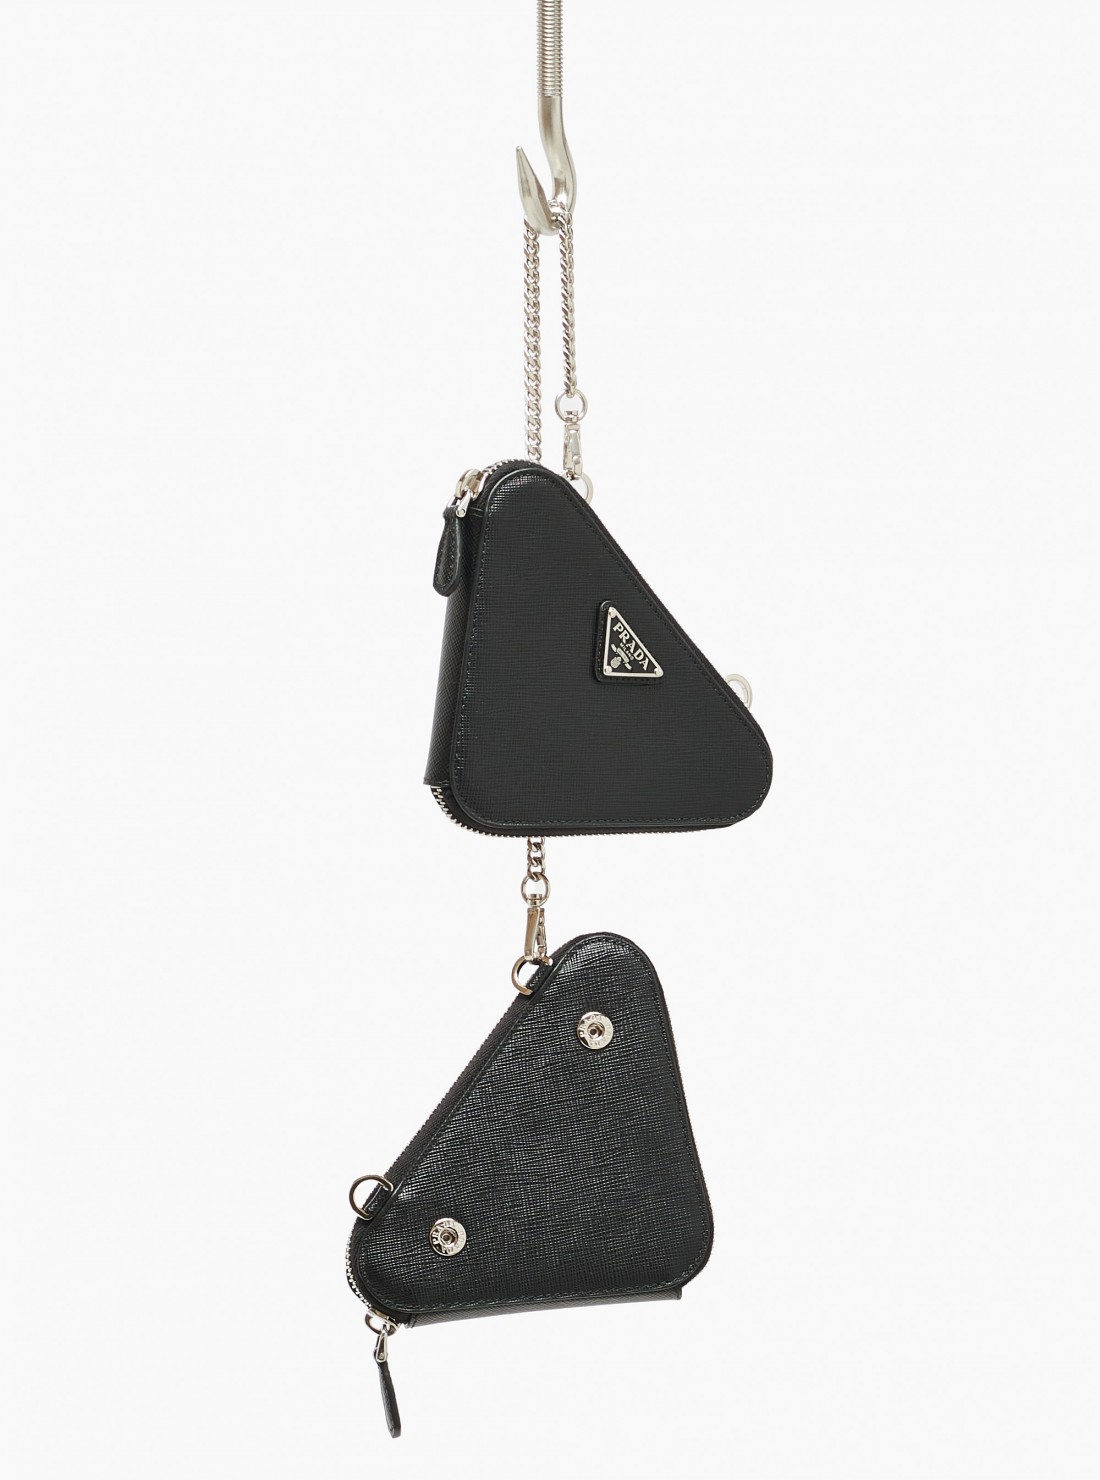 PRADA Saffiano leather mini pouch